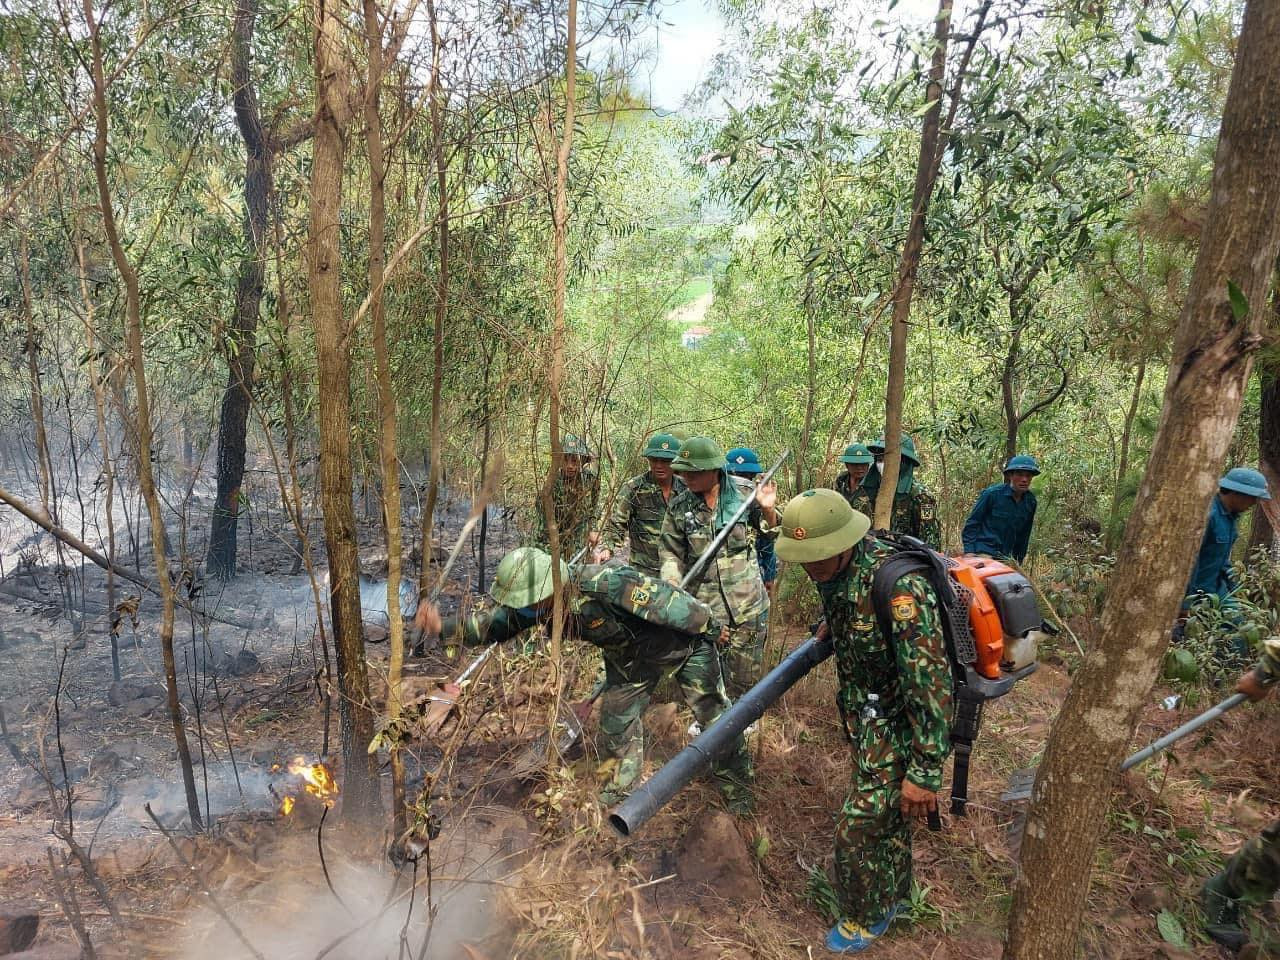 1.Để khống chế vụ cháy, huyện Diễn Châu đã huy động lực lượng của 5 xã với hàng trăm người dập lửa cứu rừng.